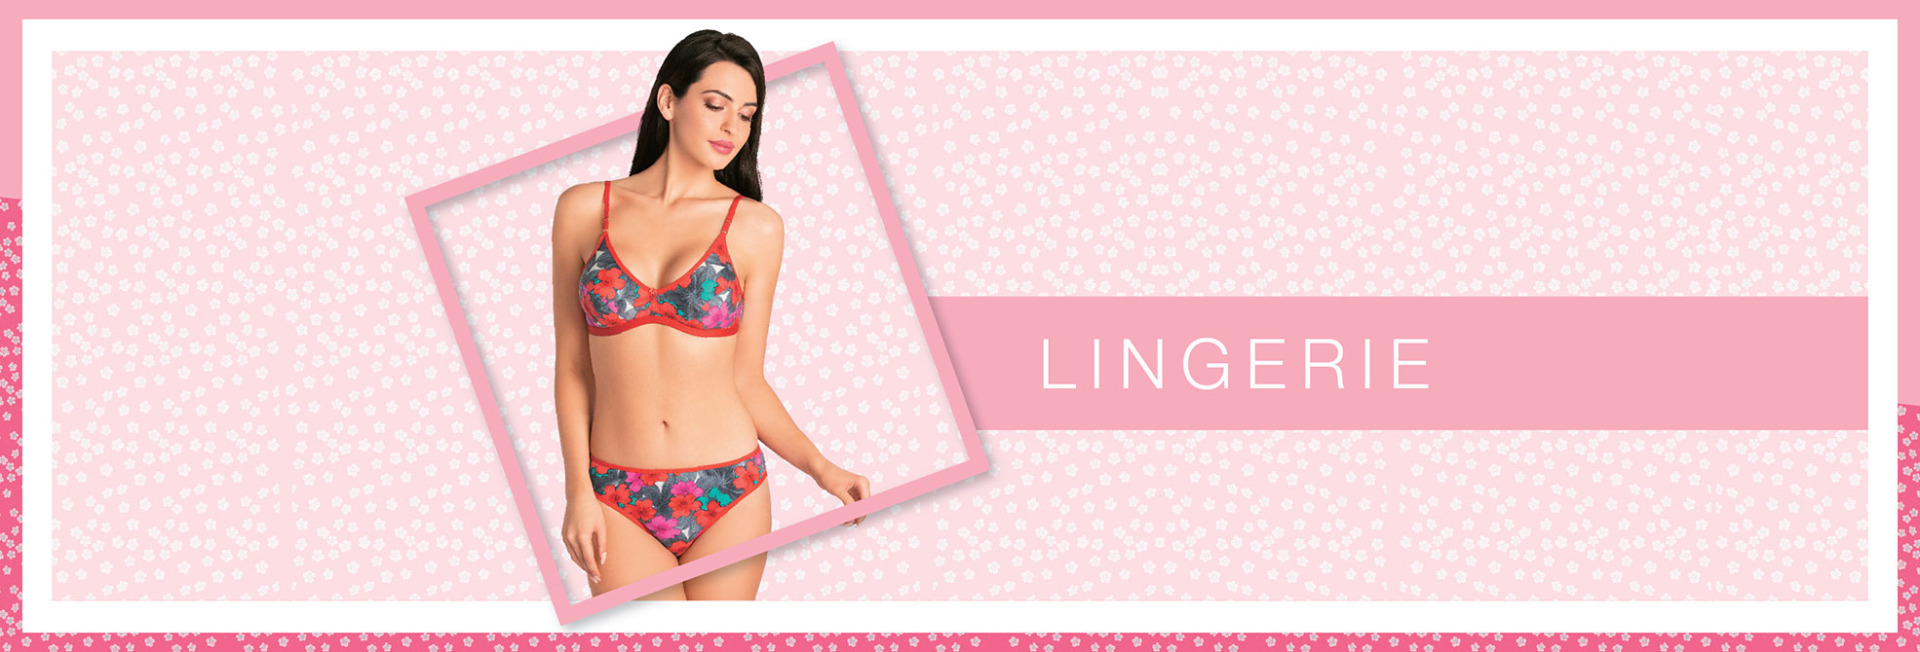 Softline Girl on X: Meet your new lingerie obsession! #Softline's